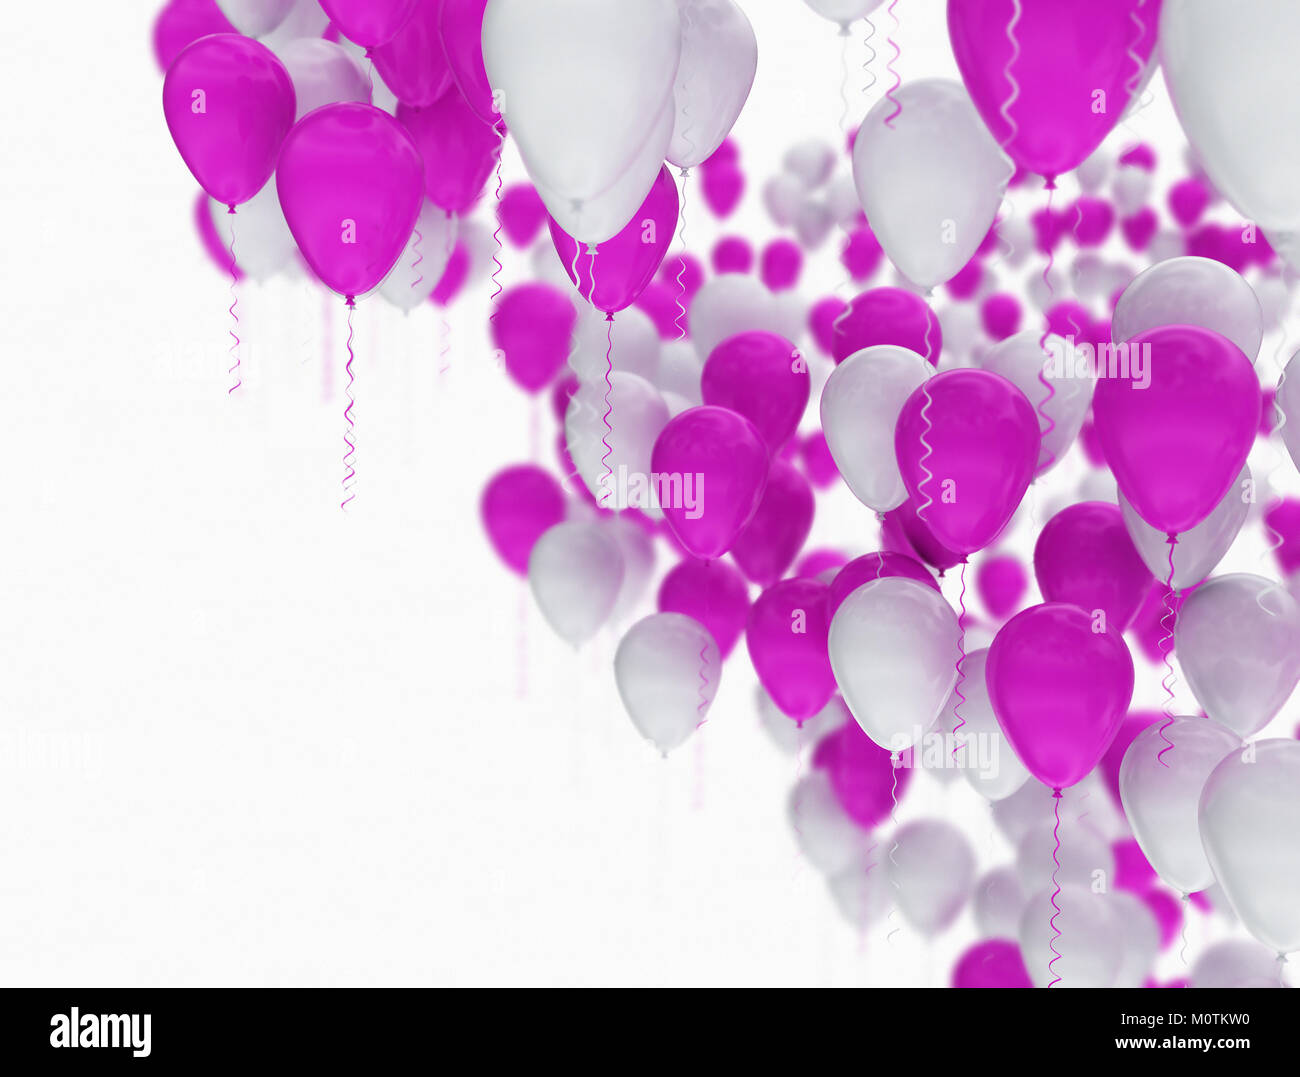 Lila und Weiß feier Luftballons auf weißem Hintergrund Fokus isoliert Stockfoto